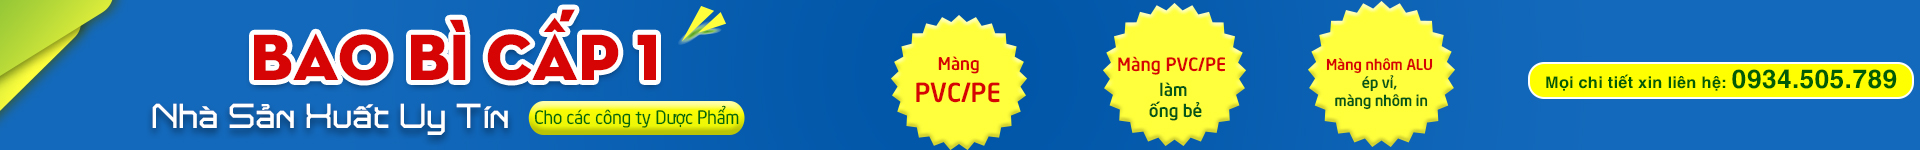 MÀNG PVC/PE